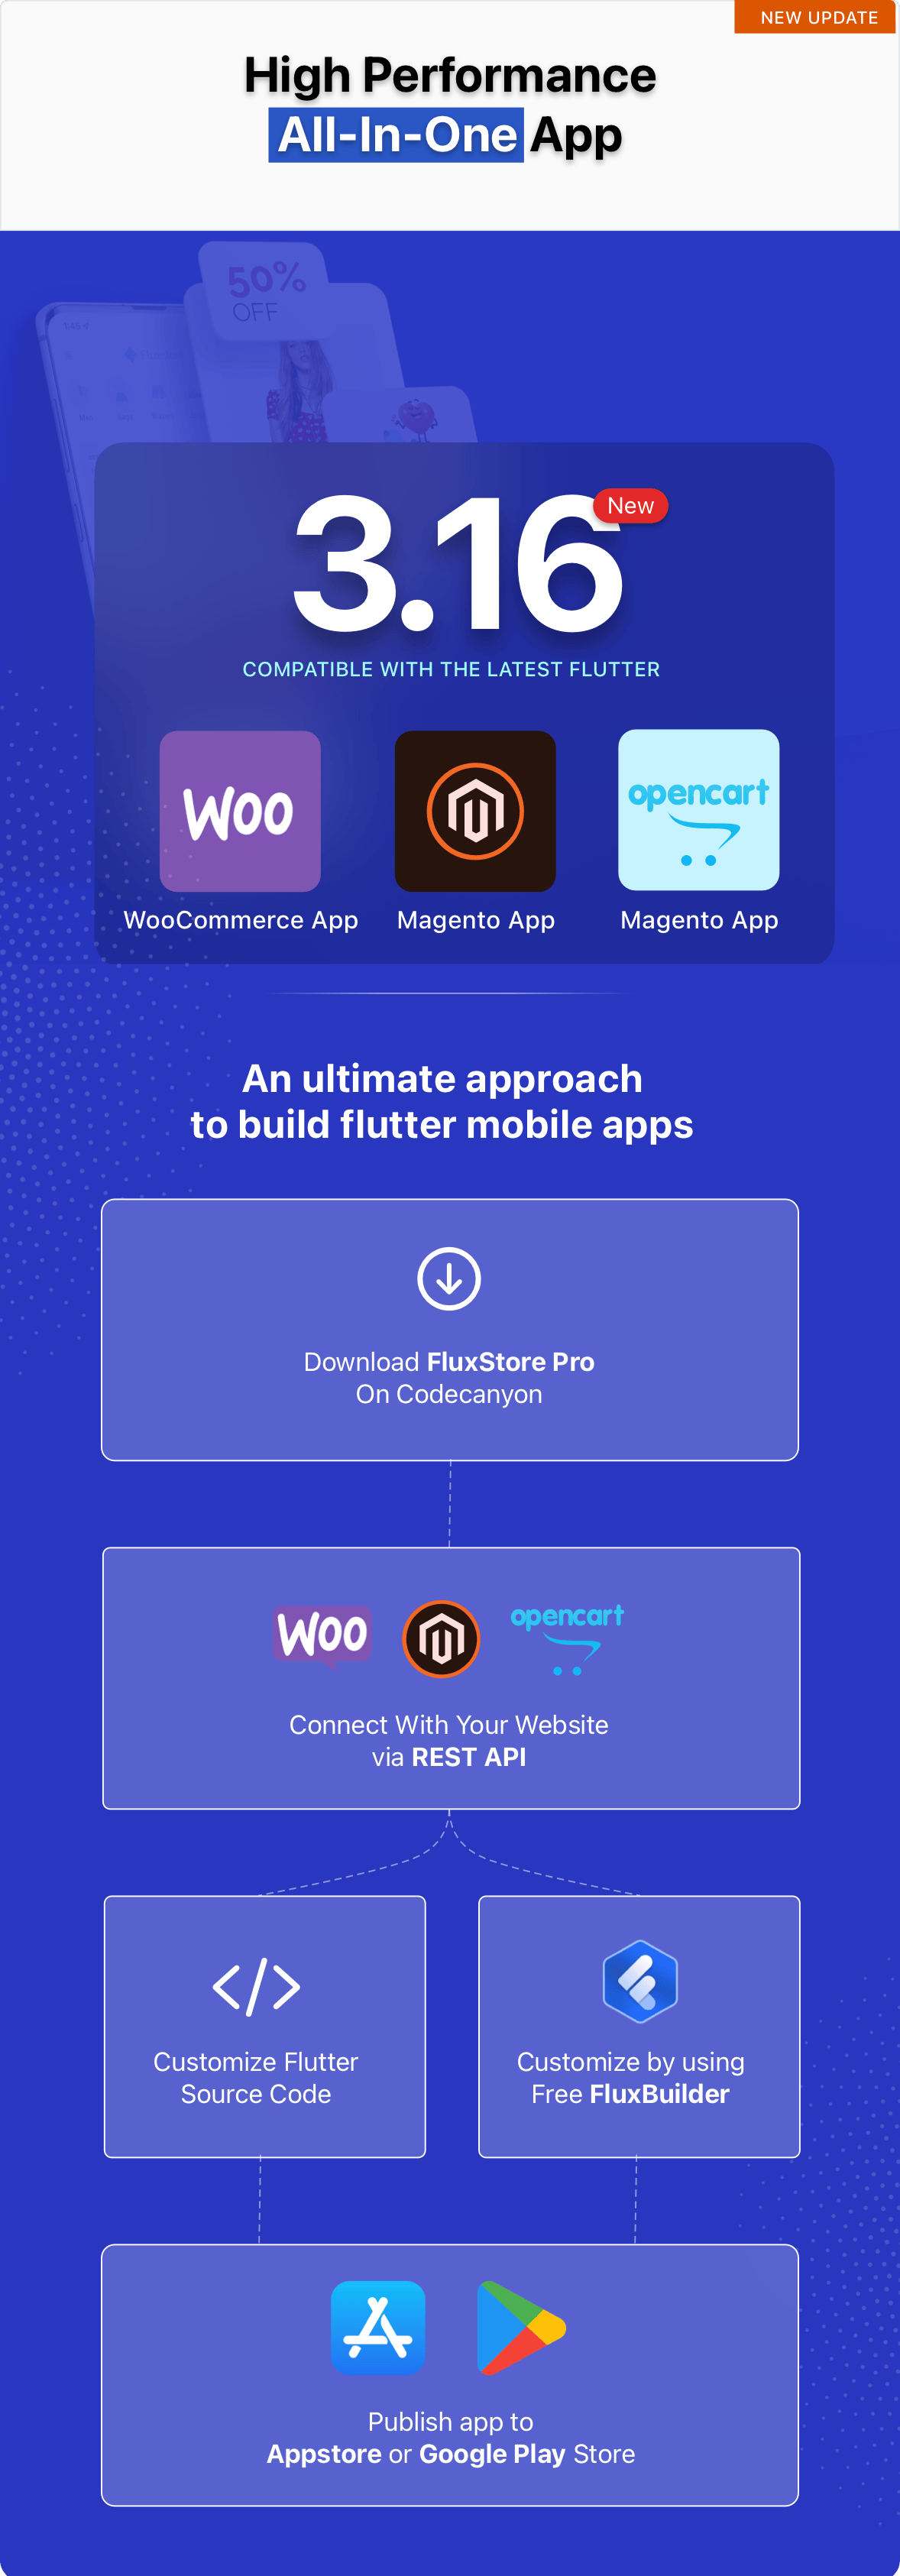 Fluxstore Pro - Flutter E-commerce Full App for Magento, Opencart, and Woocommerce - 7